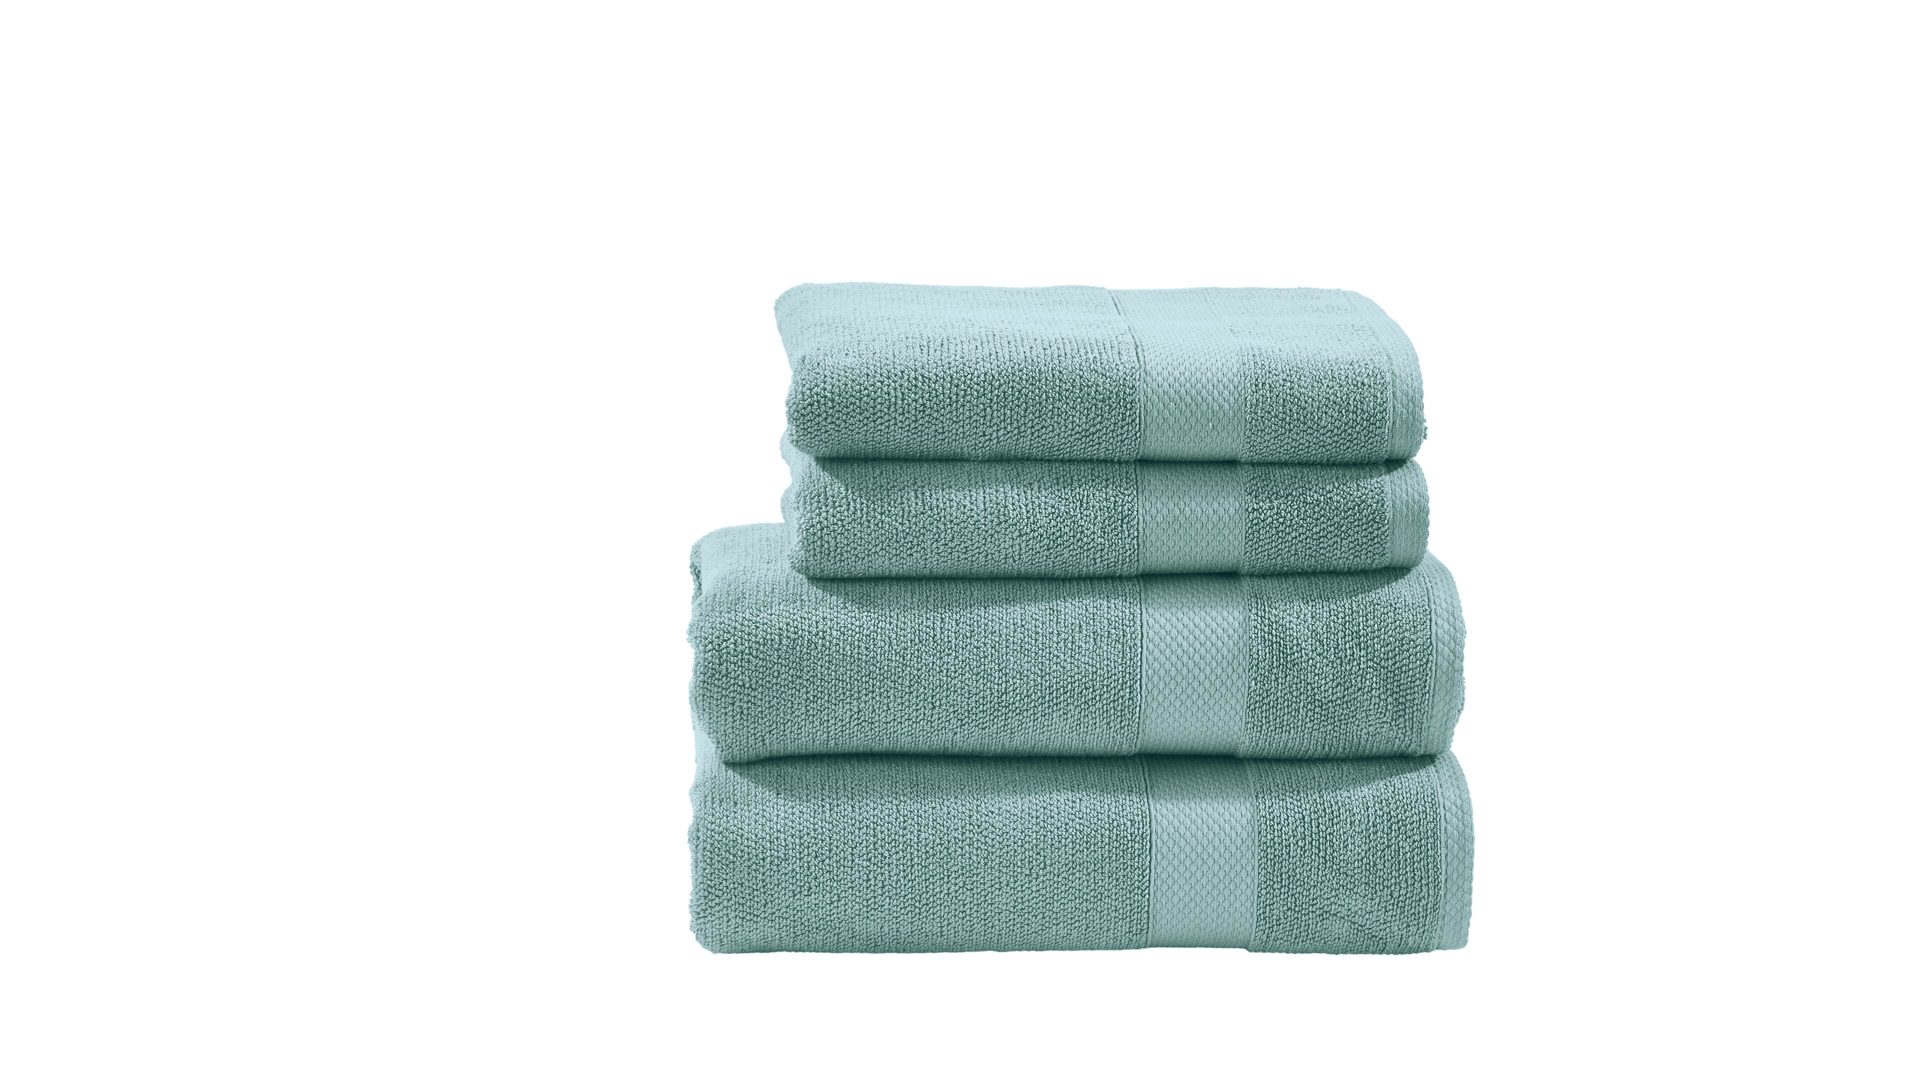 Handtuch-Set Done.® aus Stoff in Grün done.® Handtuch-Set Deluxe oceanfarbene Baumwolle – vierteilig